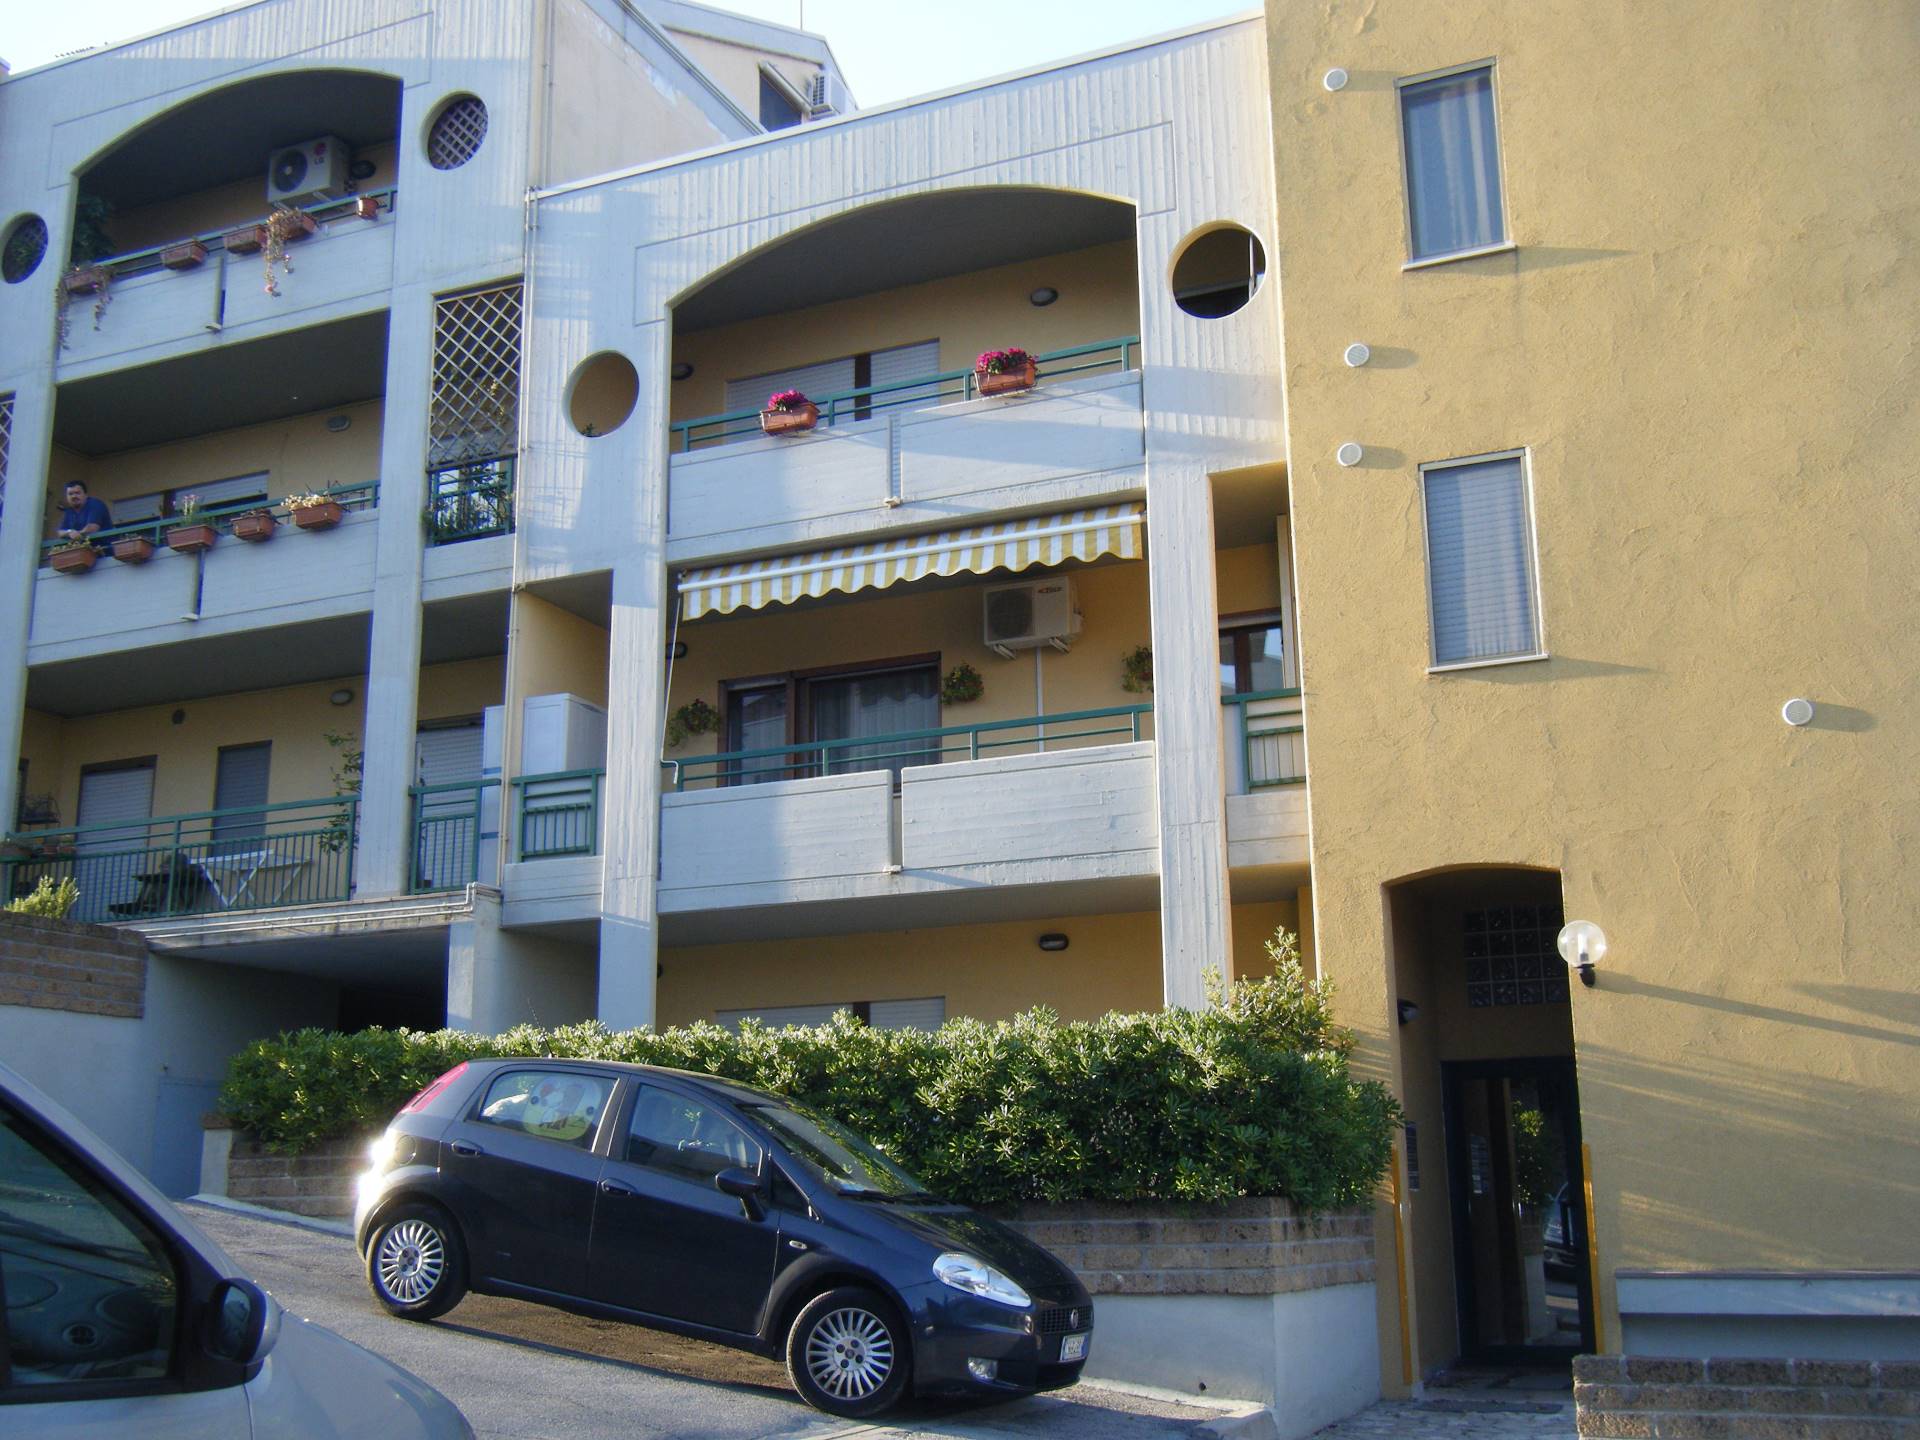 Appartamento in vendita a Vasto, 3 locali, zona Località: ZONASEMICENTRALE, prezzo € 86.000 | CambioCasa.it